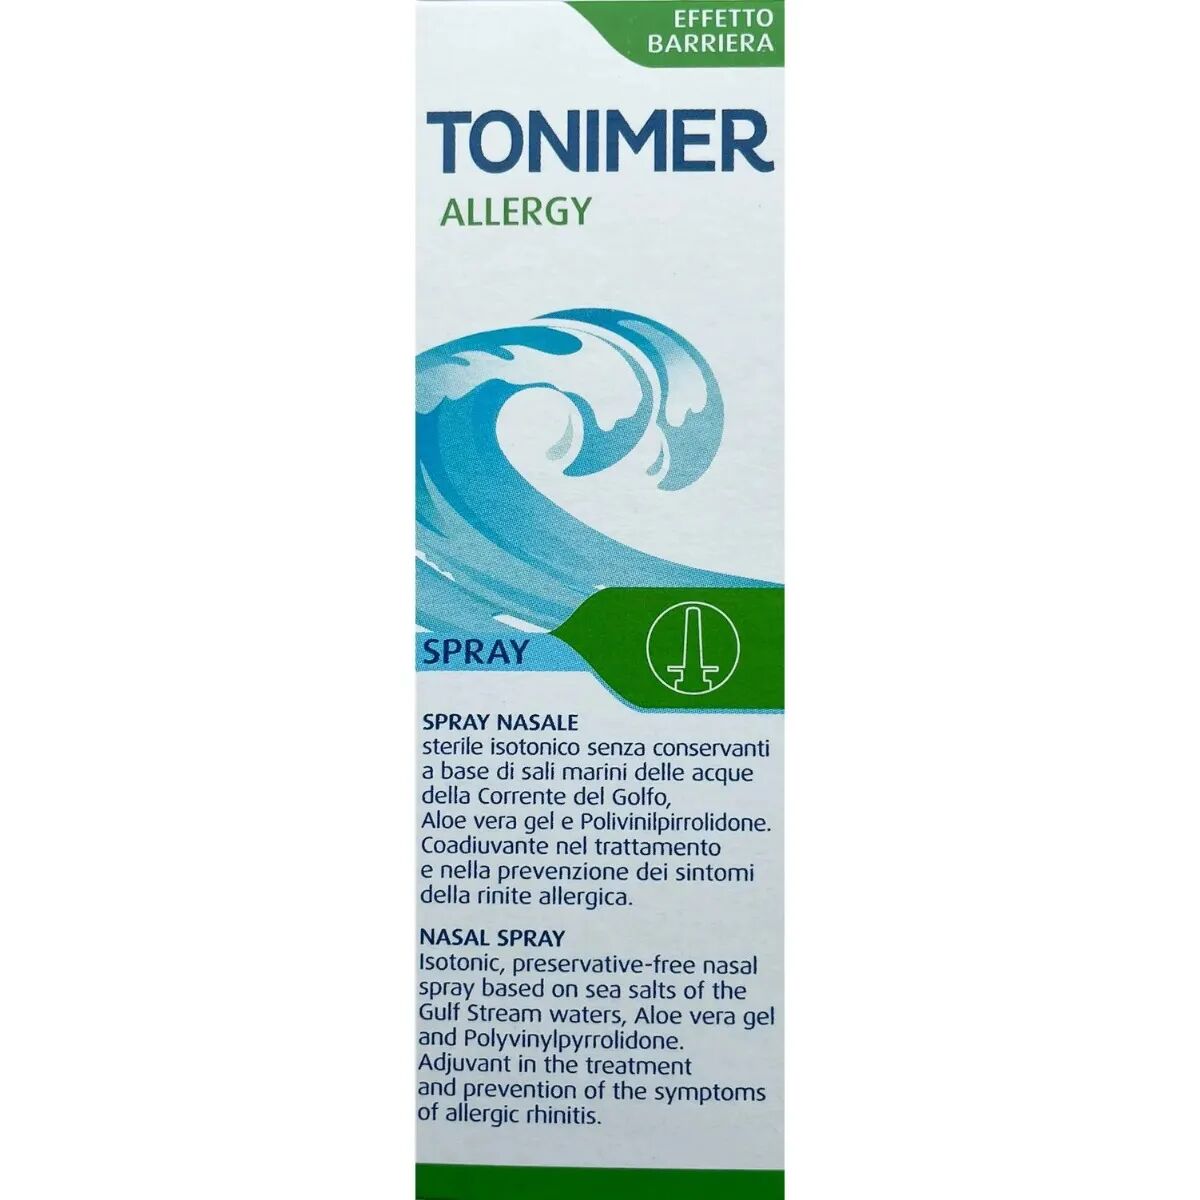 tonimer allergy spray effetto barriera contro i sintomi della rinite allergica 20 ml